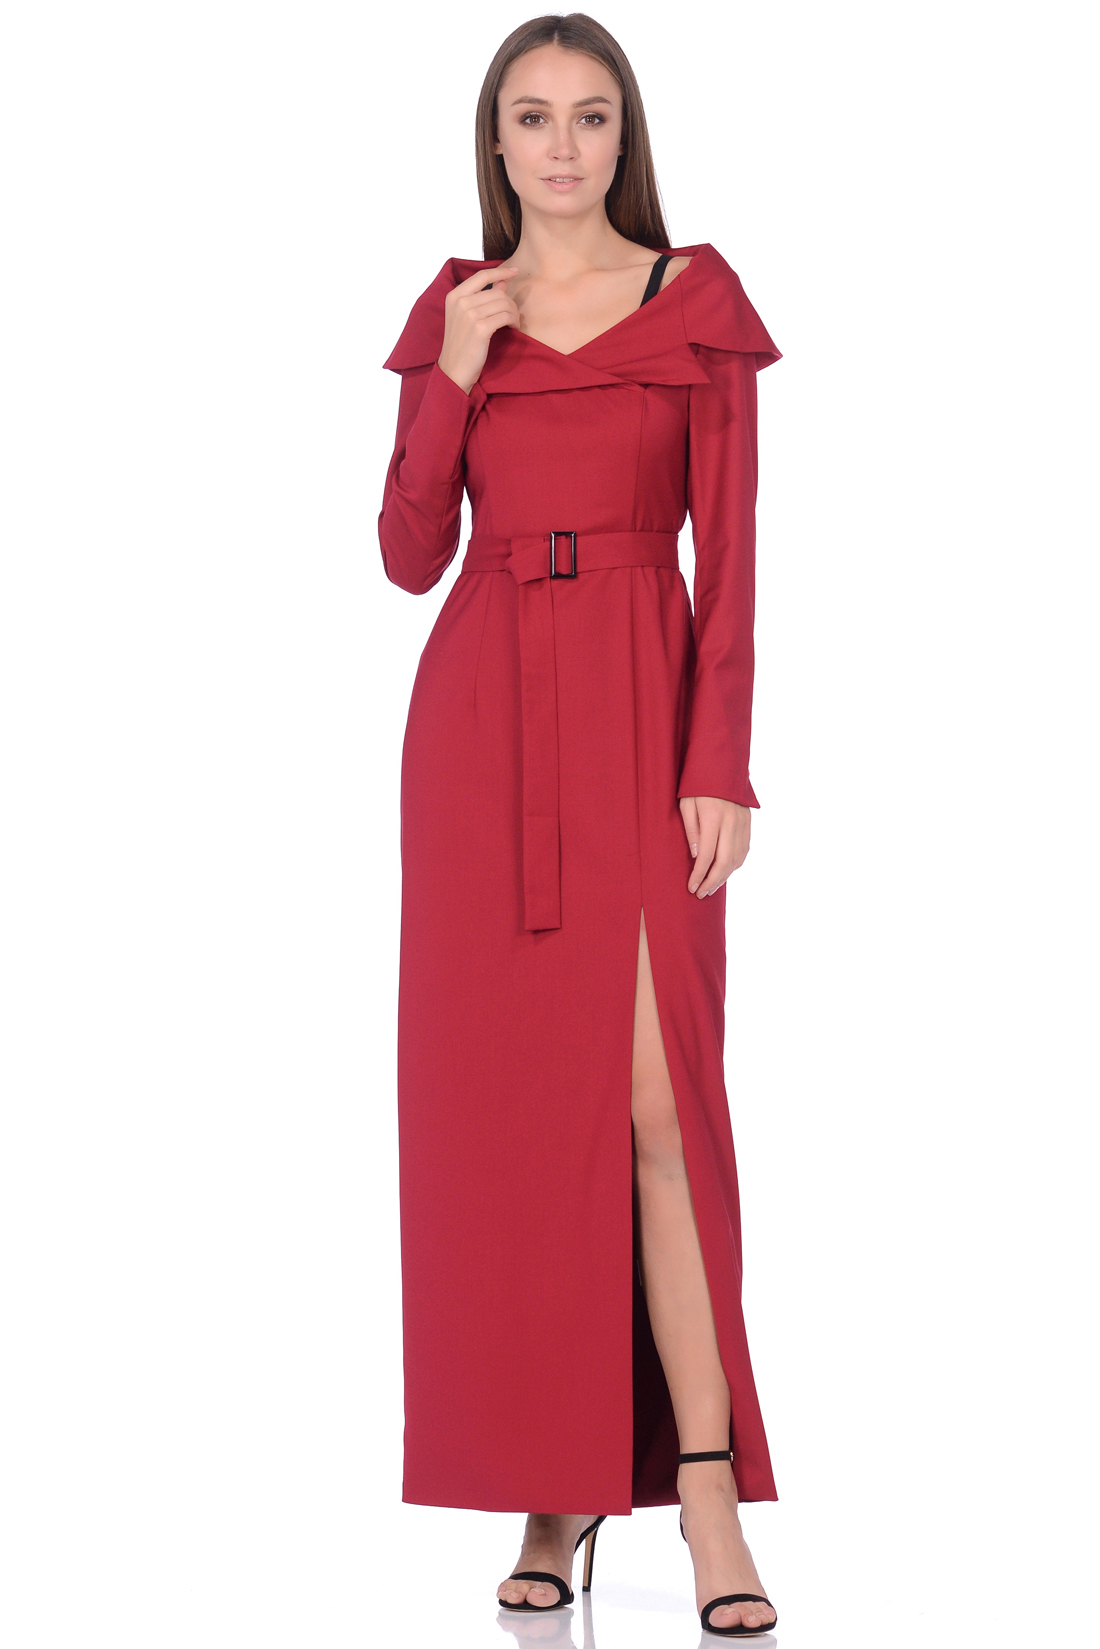 Длинное платье с разрезом (арт. baon B458574), размер M, цвет красный Длинное платье с разрезом (арт. baon B458574) - фото 1